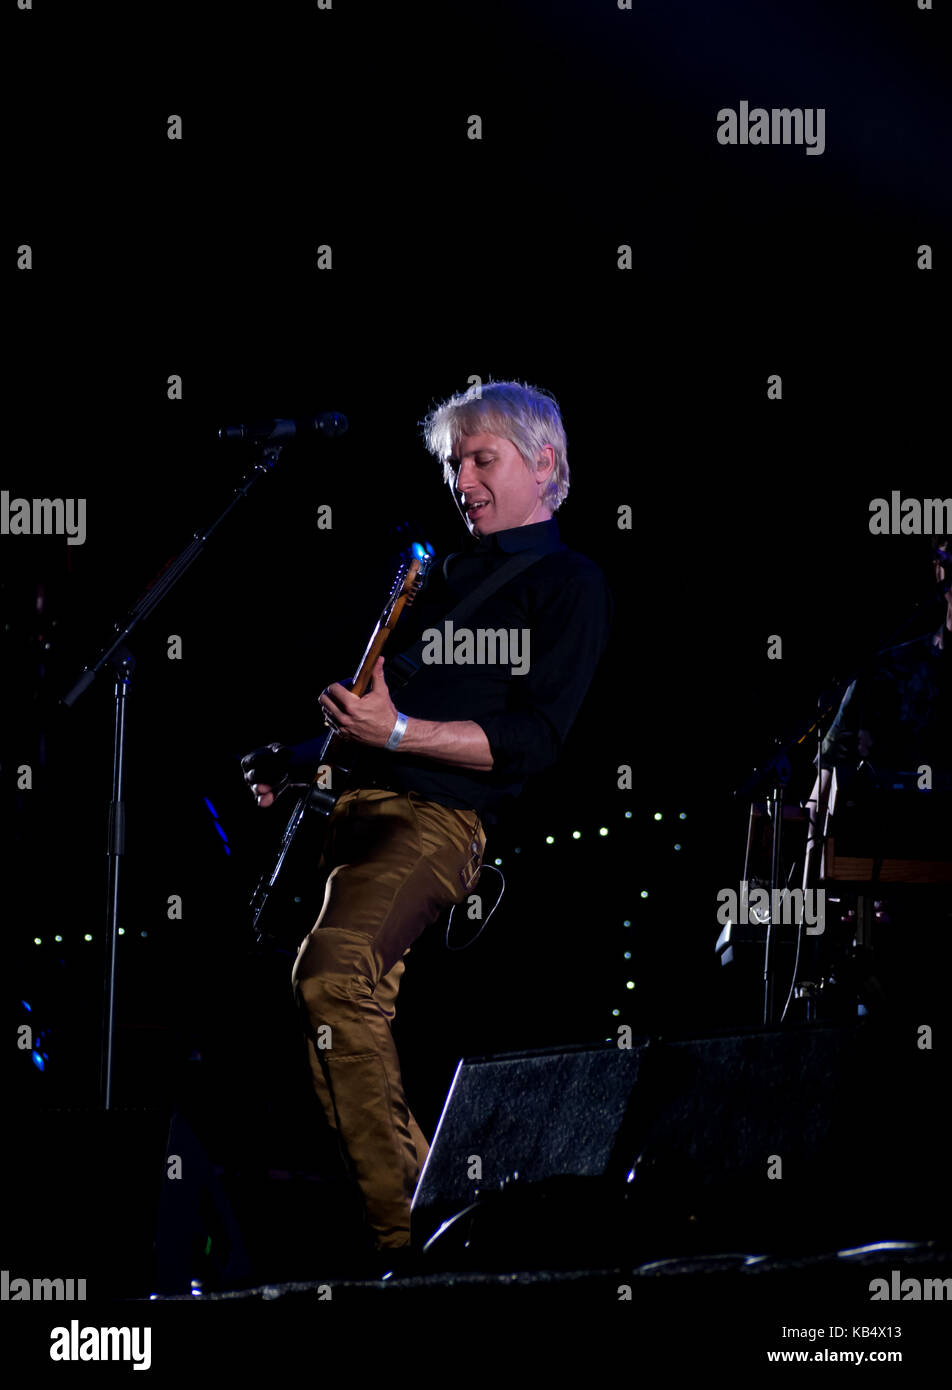 Alex Kapranos de Franz ferdinand sur scène joue au festival victorieux à Portsmouth, en Angleterre. Banque D'Images